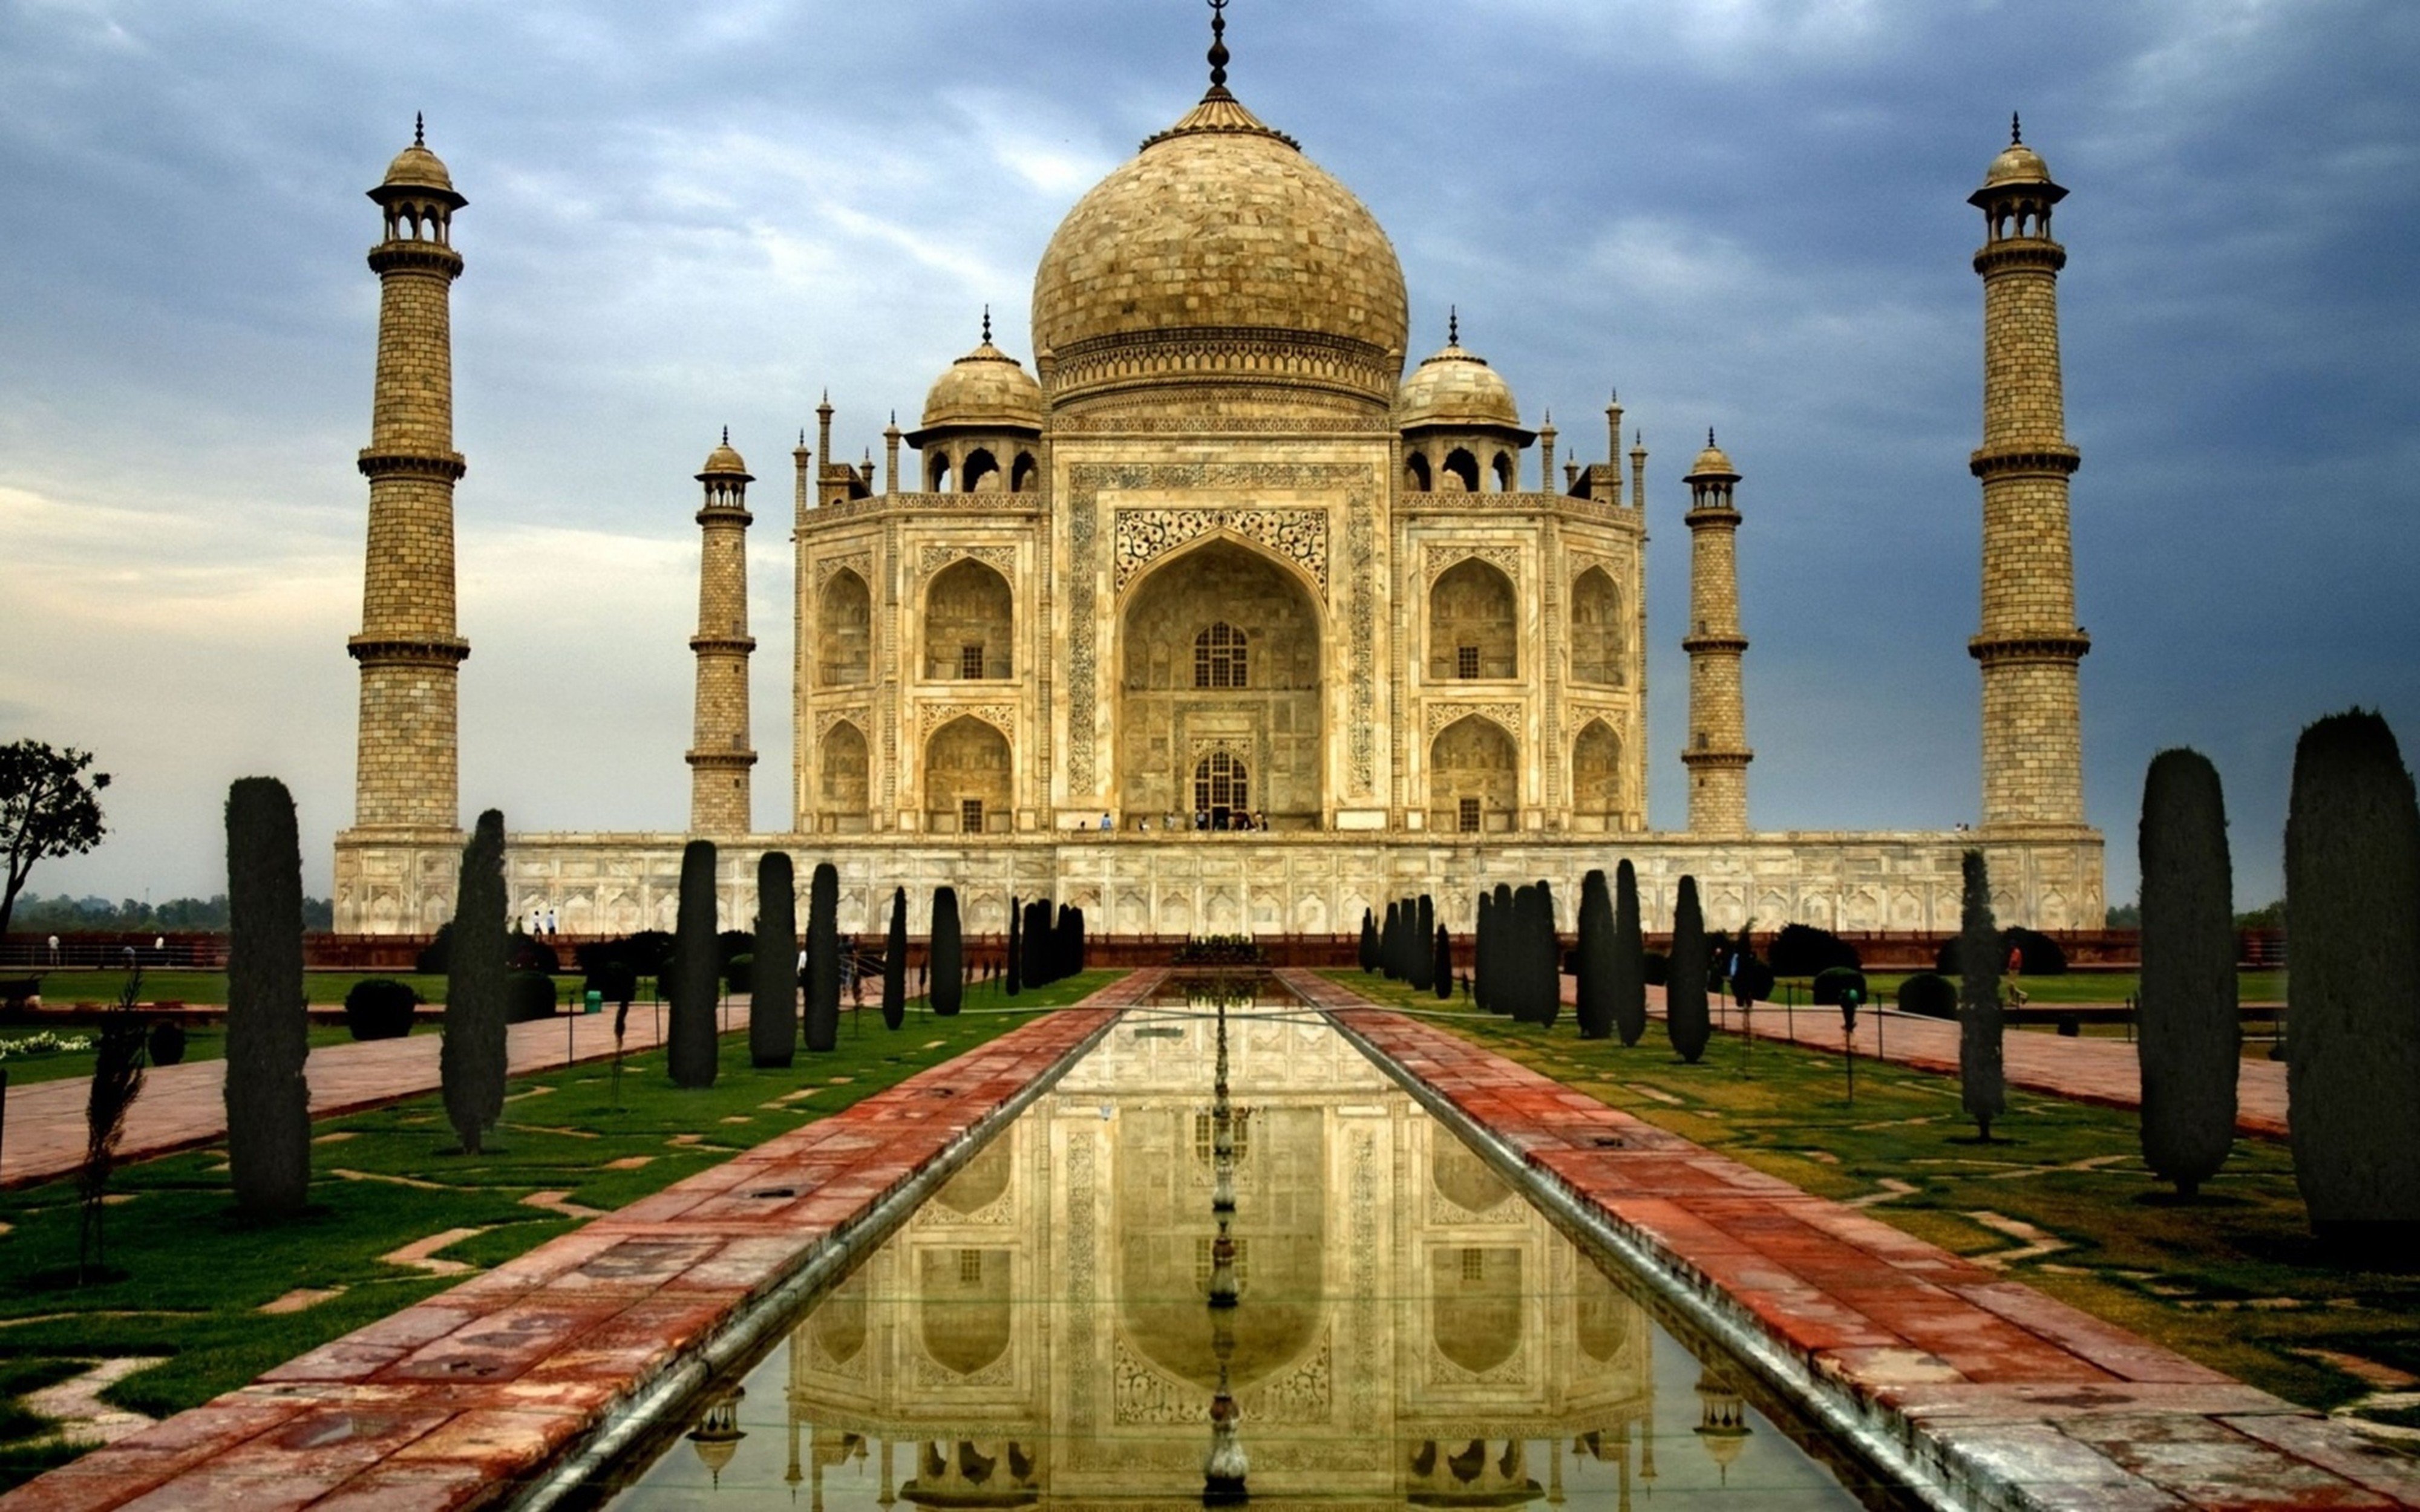 Wallpapers garden India Mahal on the desktop